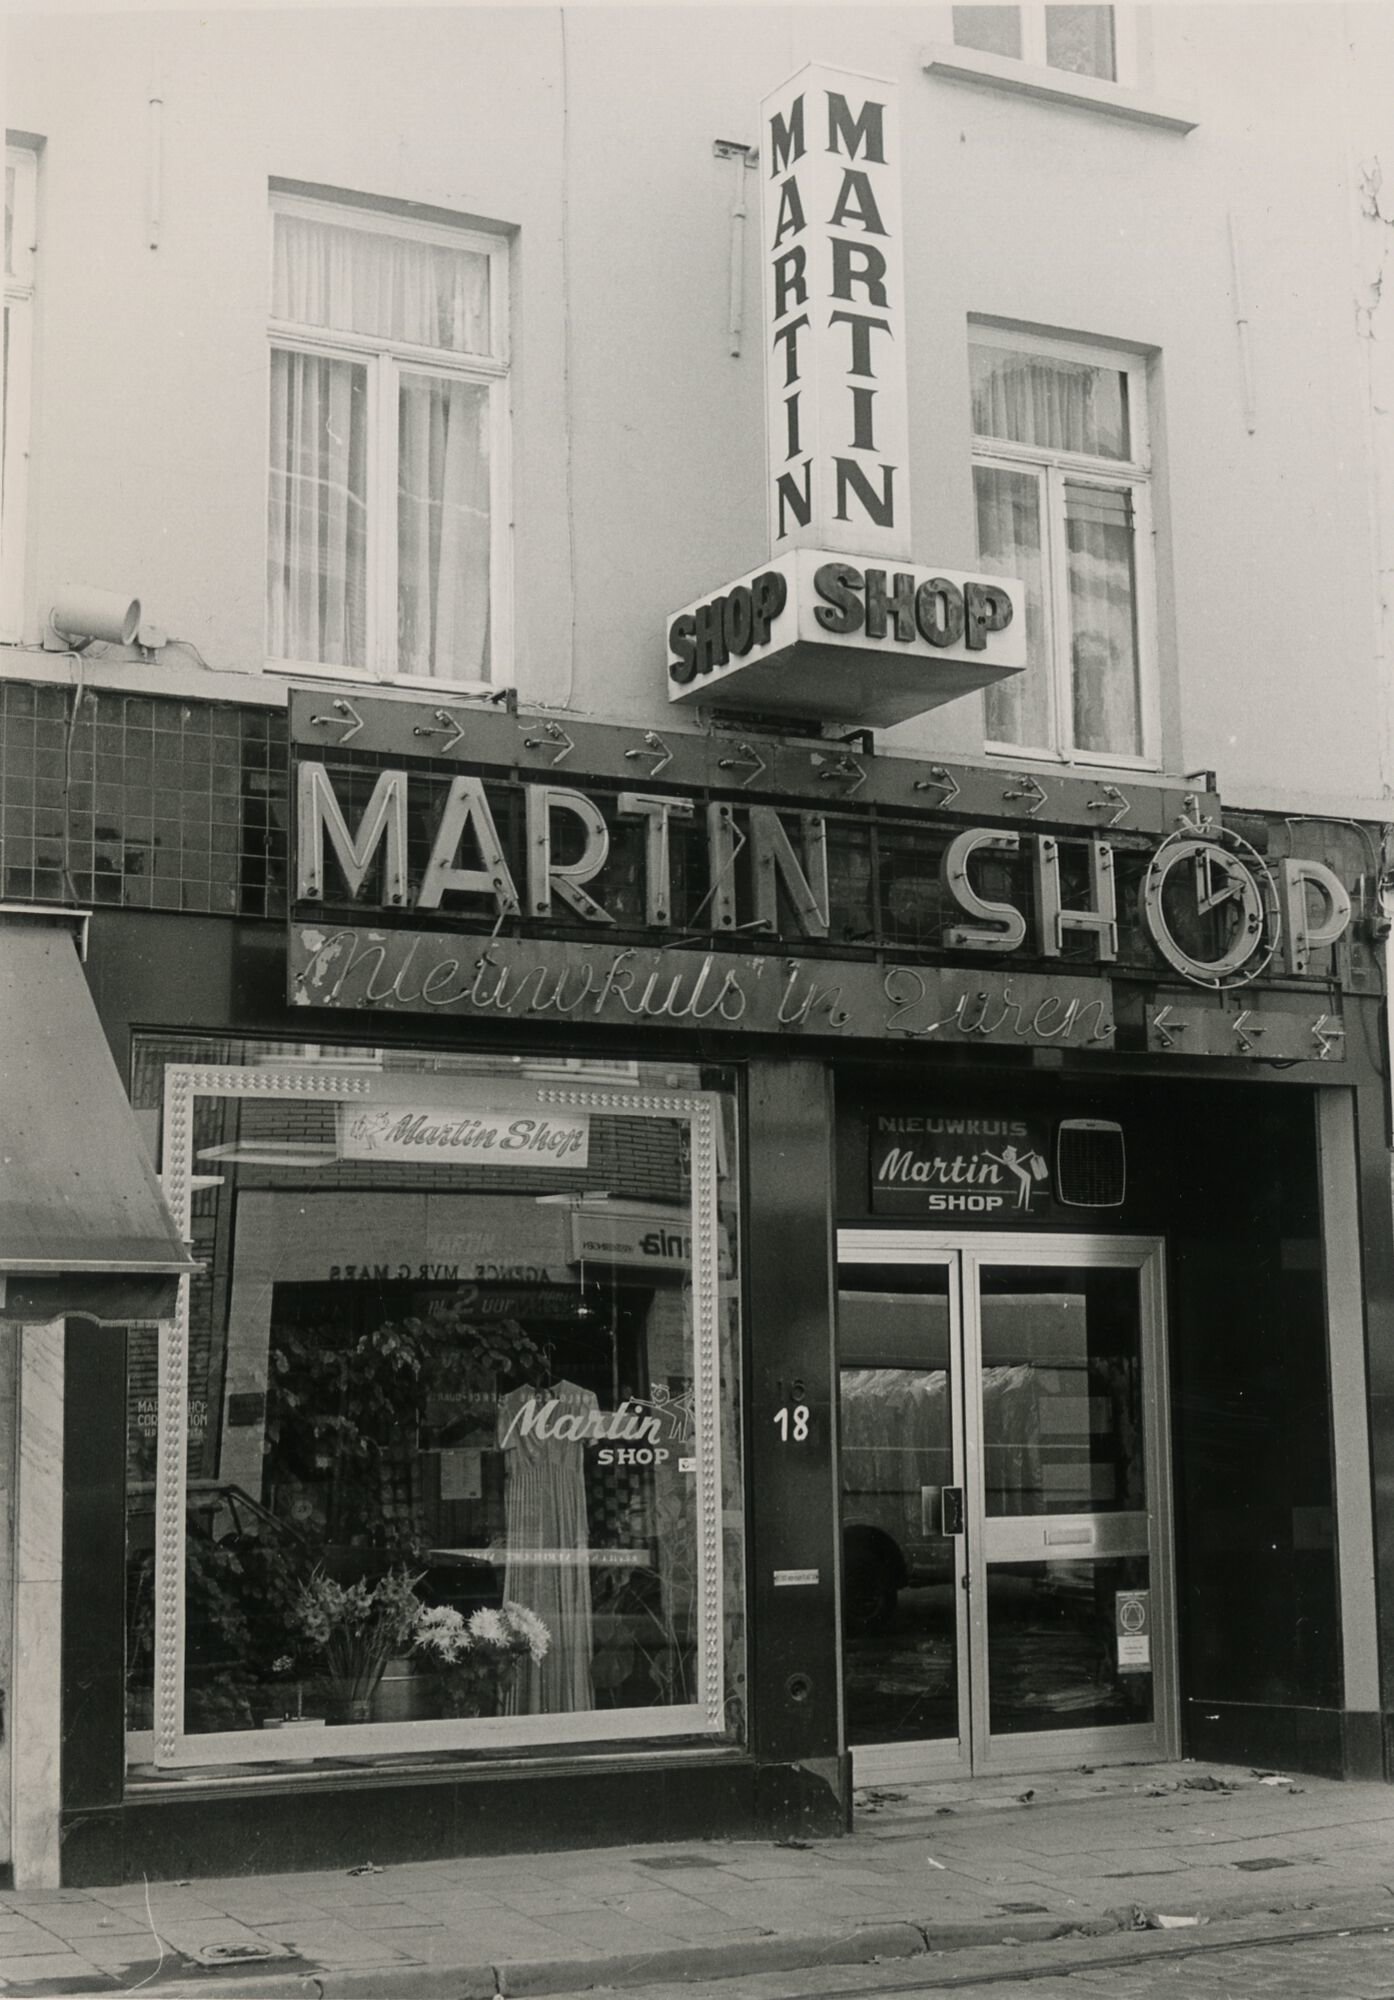 Etalage van nieuwkuis Martin Shop